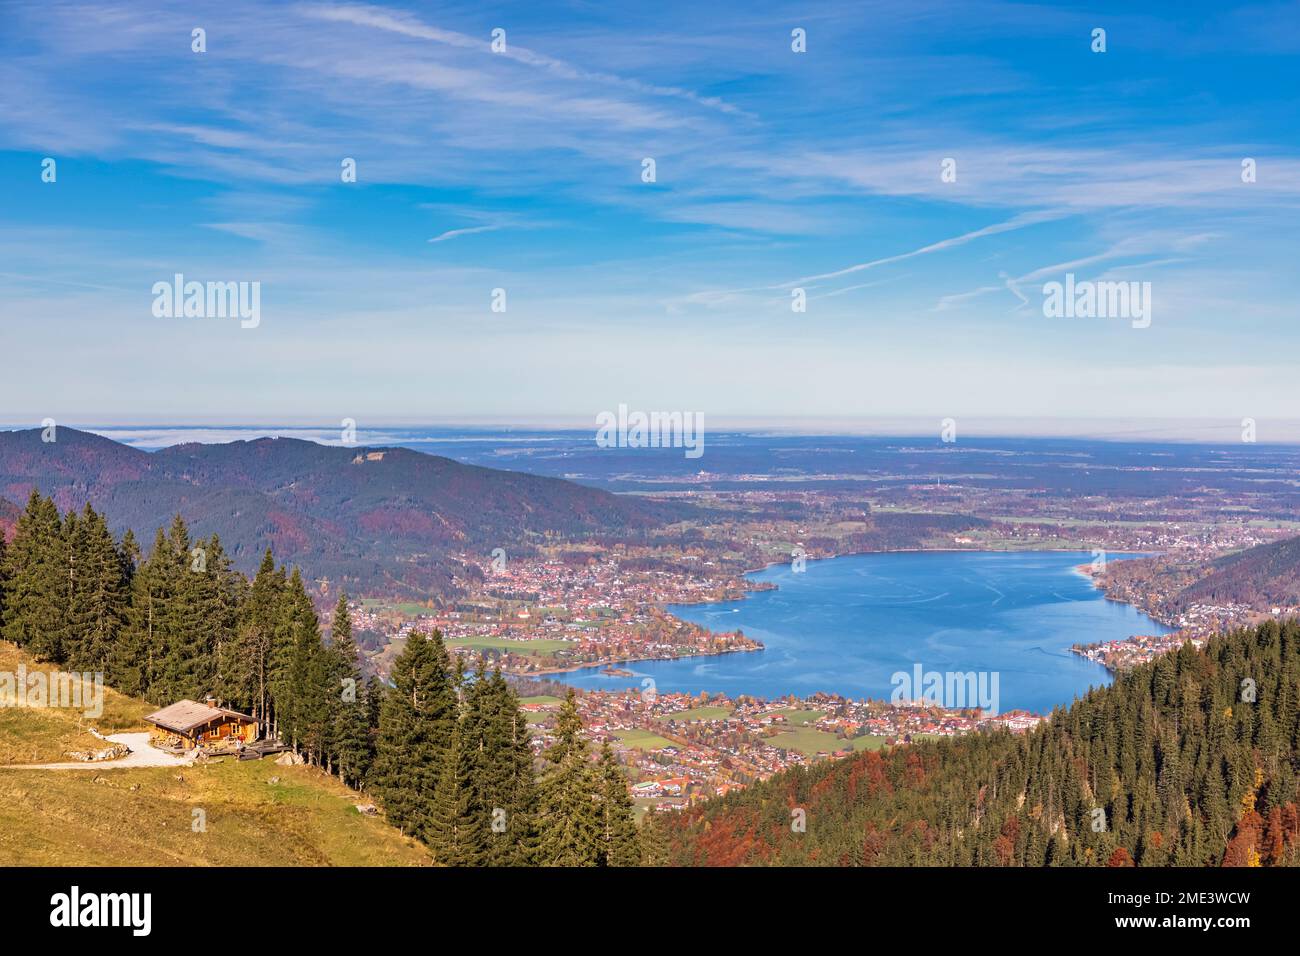 Germania, Baviera, Rottach-Egern, il lago Tegernsee e le città circostanti viste dalla cima del monte Wallberg Foto Stock